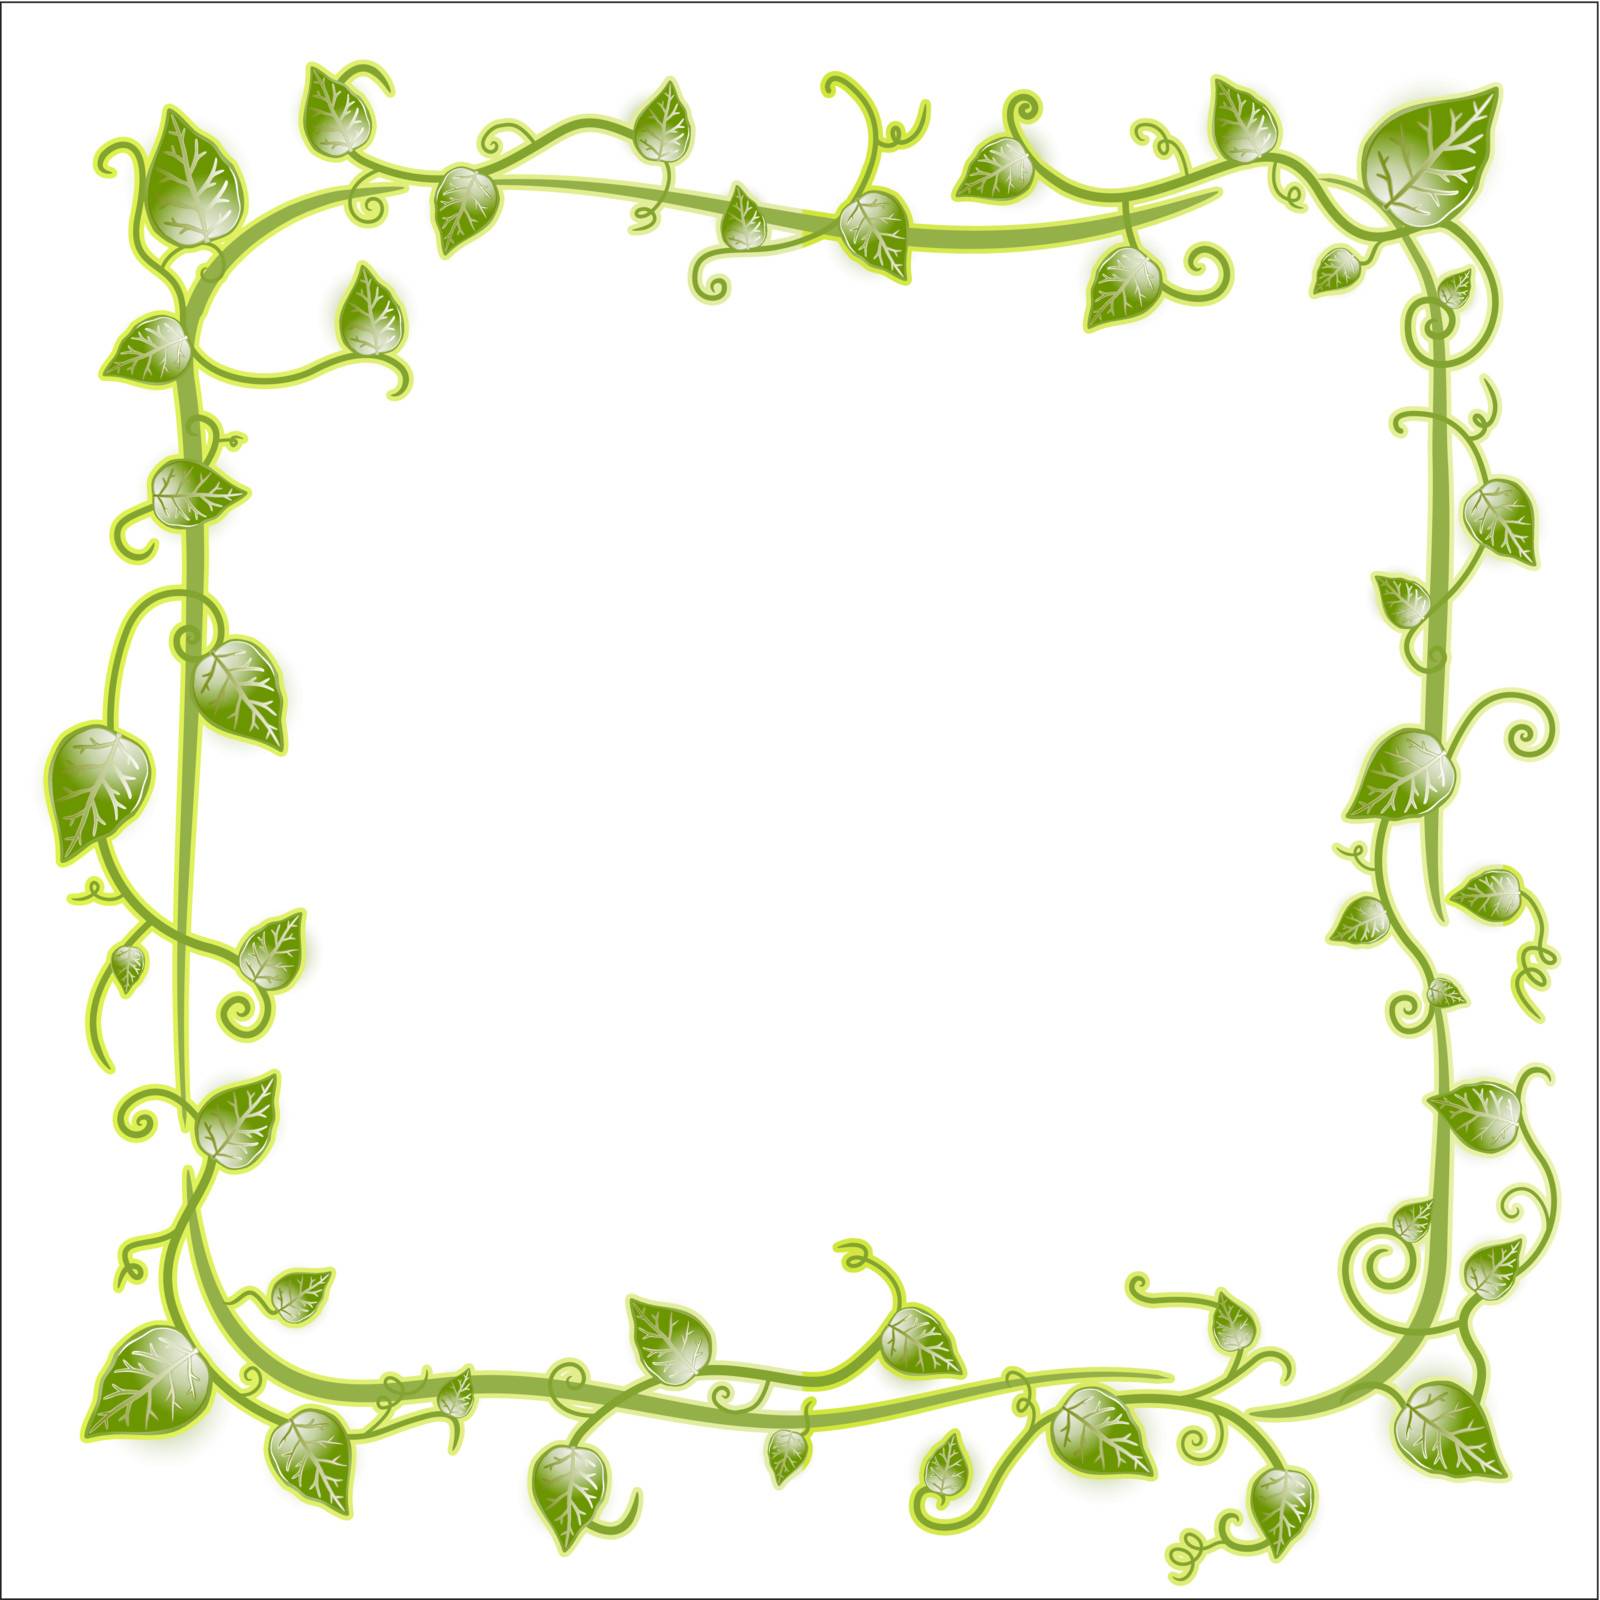 Vector illustration of a vintage floral leaf frame with modern curls and vines.